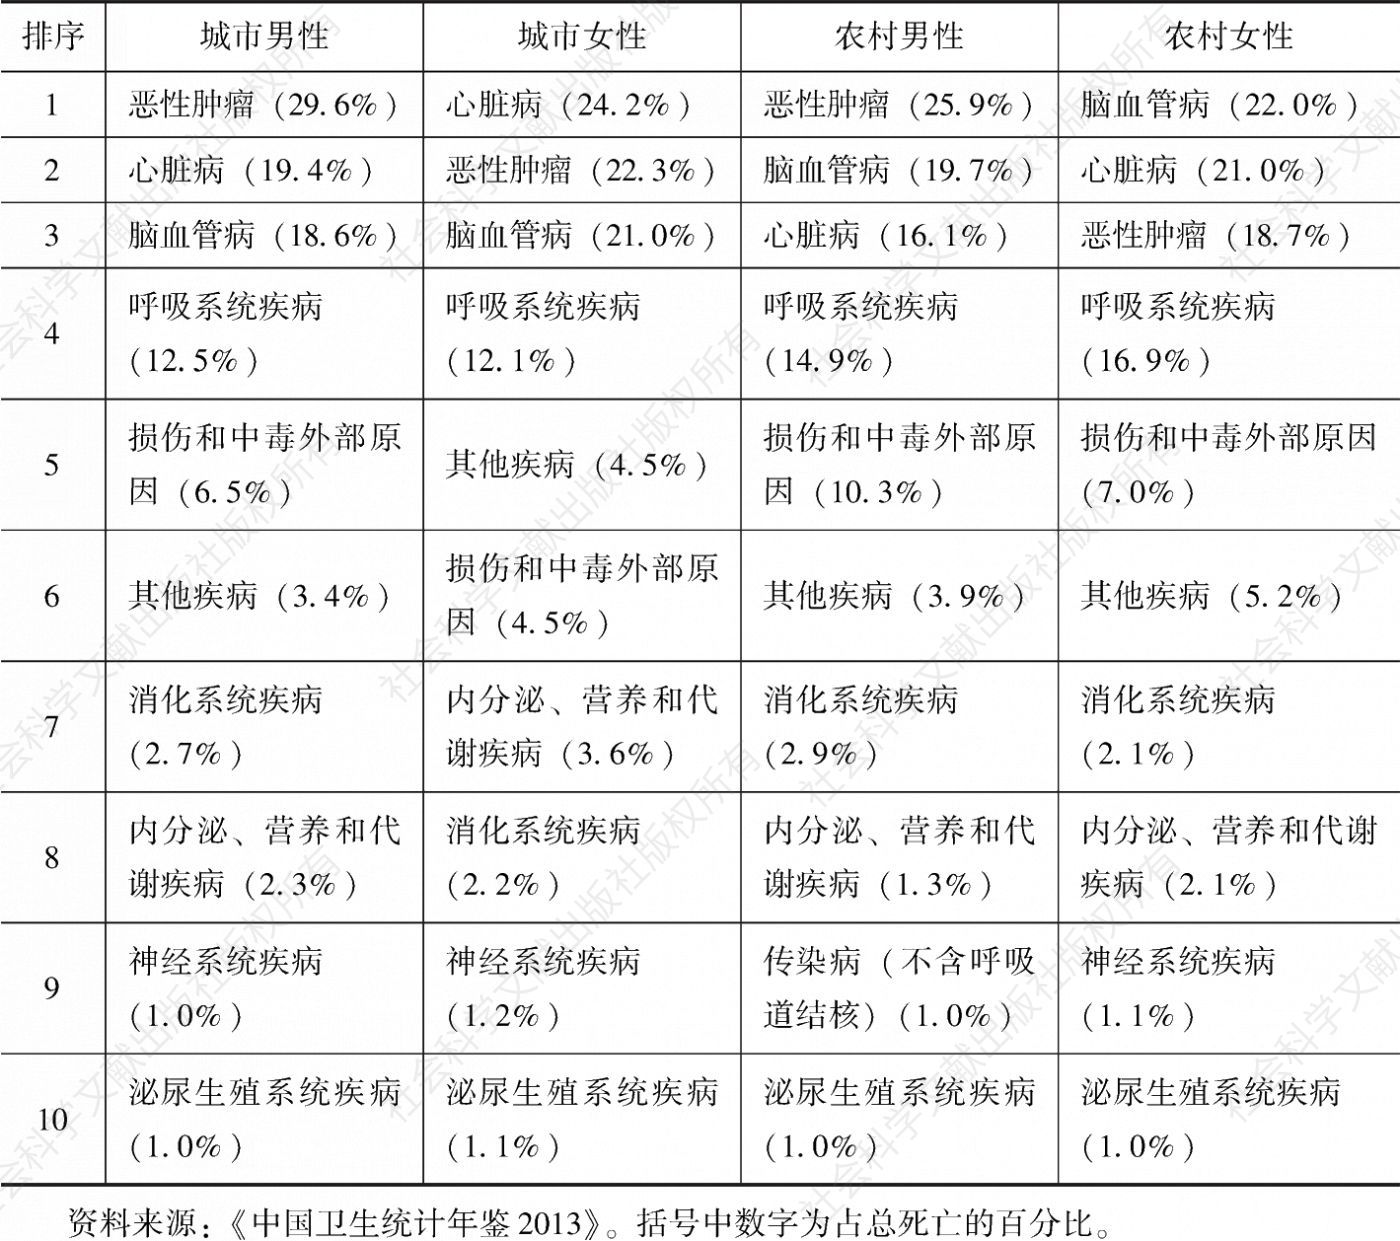 表1-1 分城乡、分性别的2012年中国居民主要死因分布情况